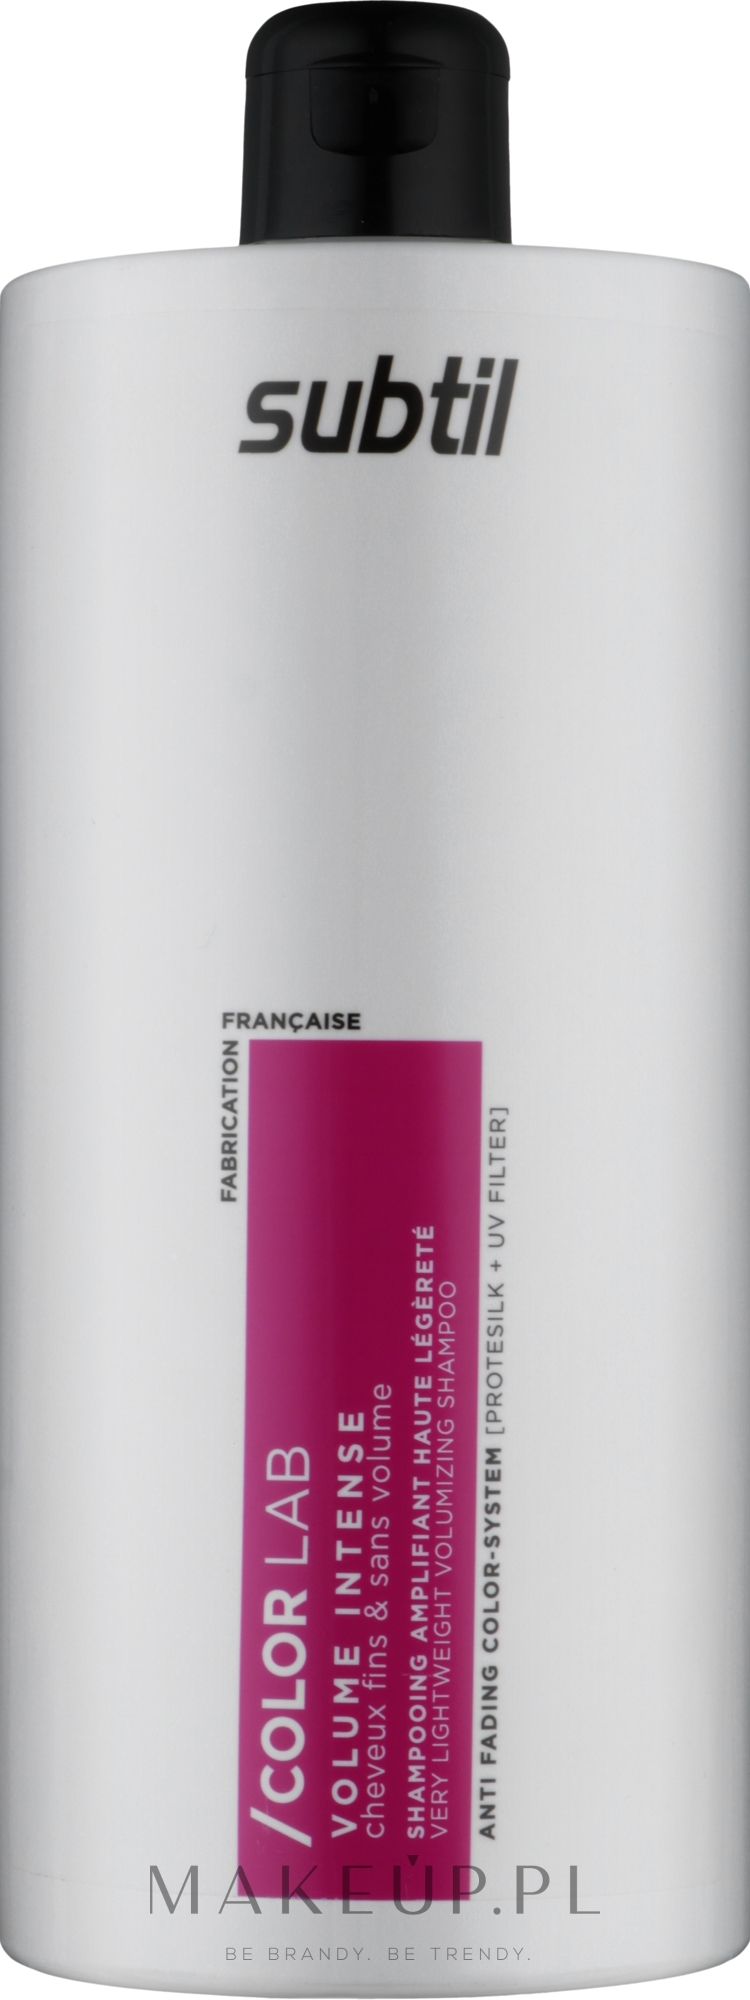 Ultralekki szampon zwiększający objętość włosów cienkich - Laboratoire Ducastel Subtil Color Lab Volume Intense Very Lightweight Volumizing Shampoo — Zdjęcie 1000 ml